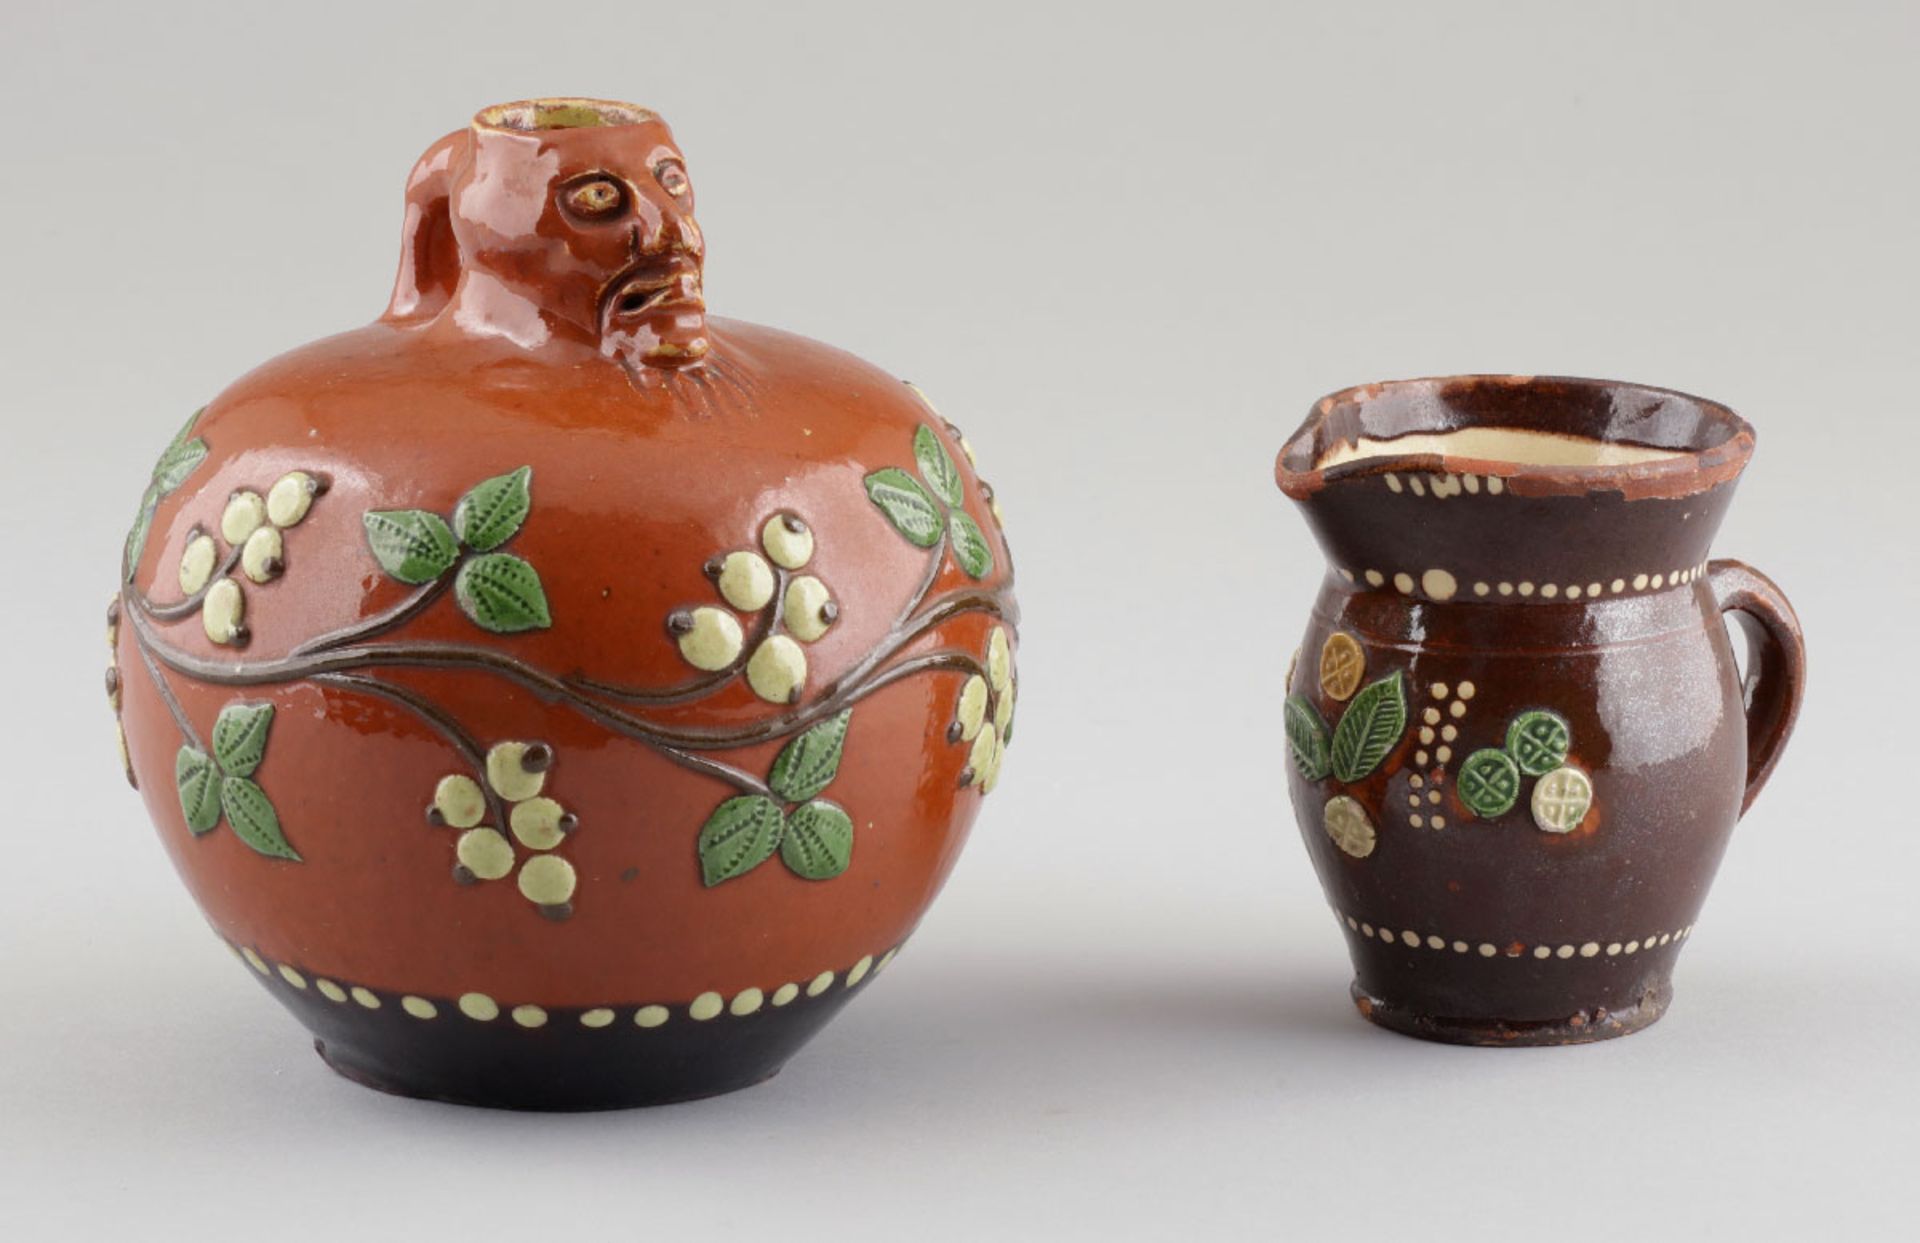 Krug mit Bartmann und Krug Werra-Keramik, 19. Jh. Keramik, heller Scherben. Gelb-braun und